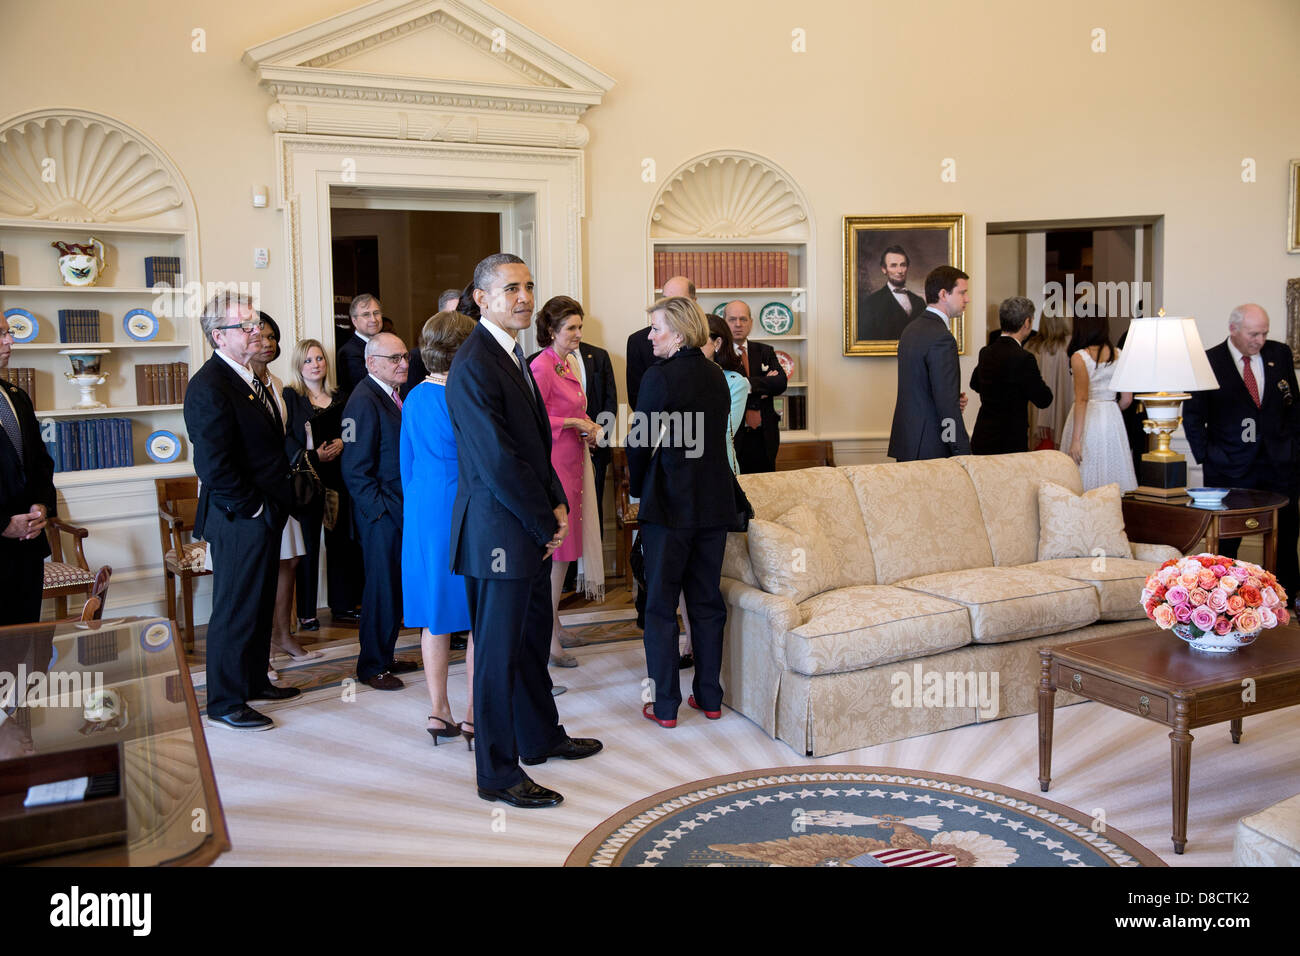 US-Präsident Barack Obama in einer Replik des Oval Office während einer Tournee des George W. Bush Presidential Library and Museum auf dem Campus der Southern Methodist University 25. April 2013 in Dallas, Texas hält. Stockfoto